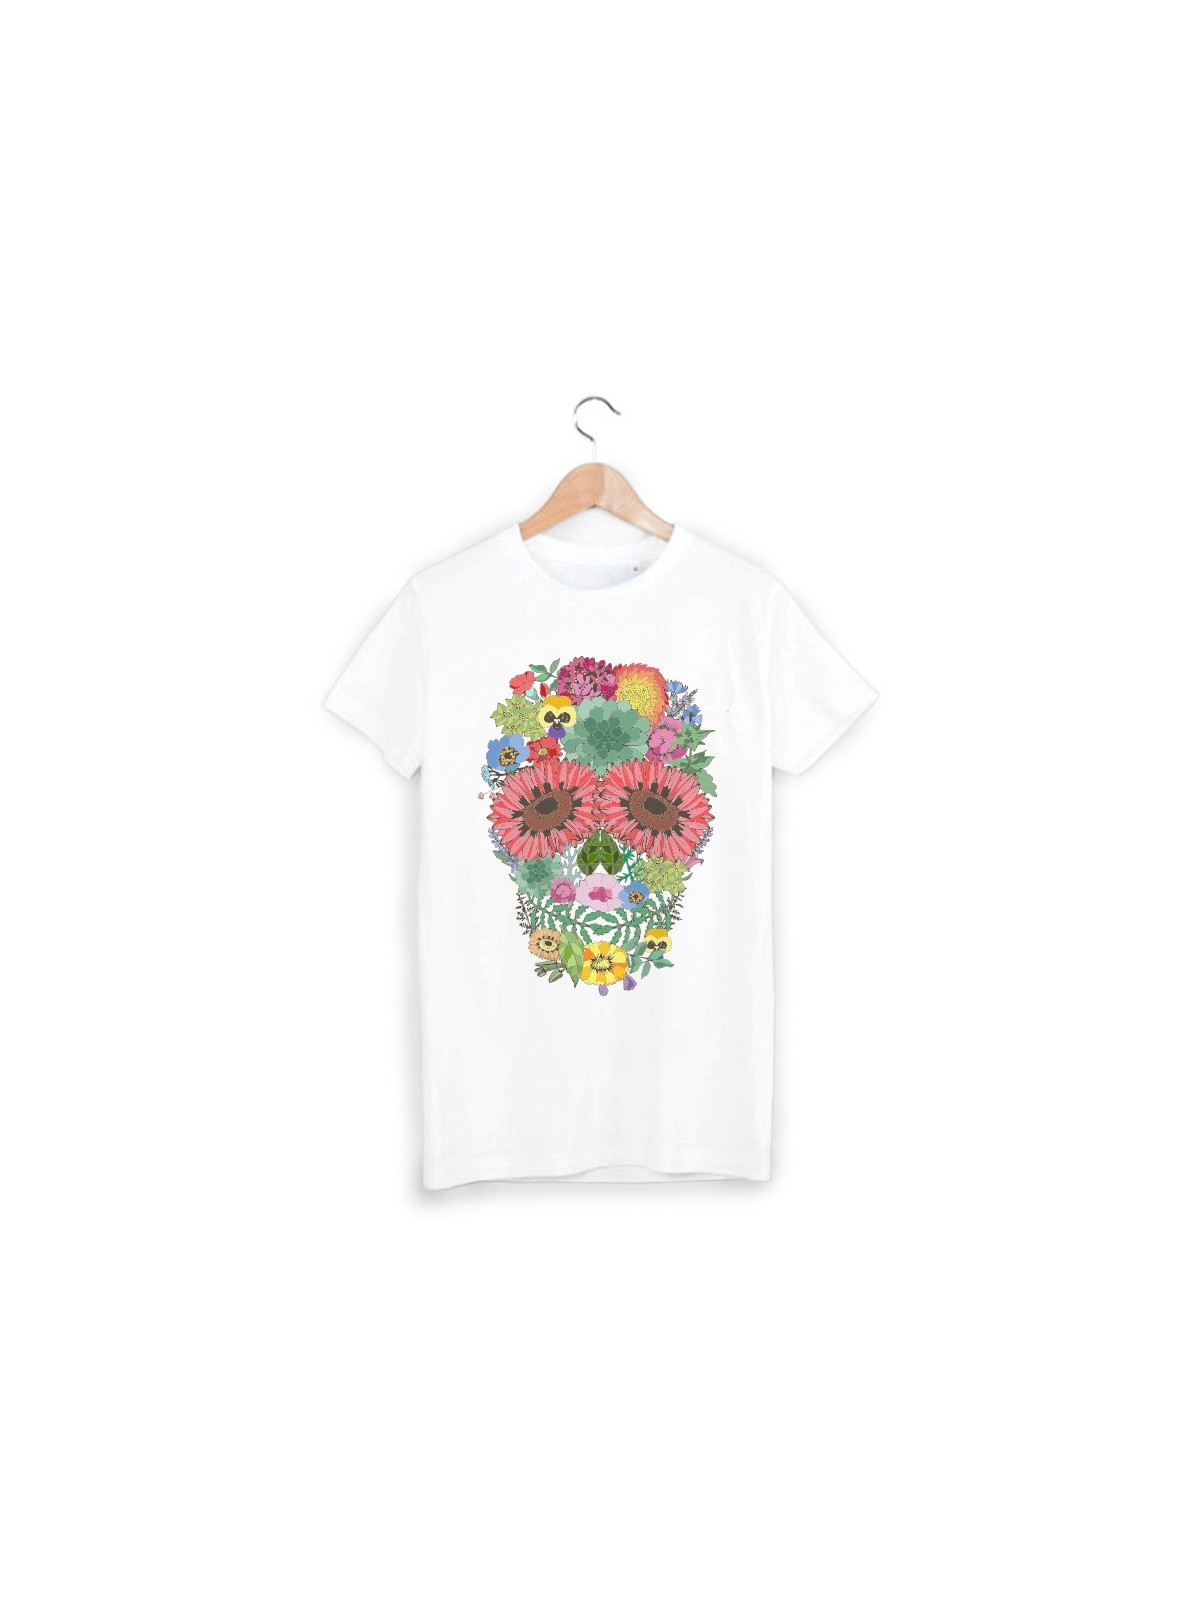 T-Shirt tÃªte de mort floral ref 999